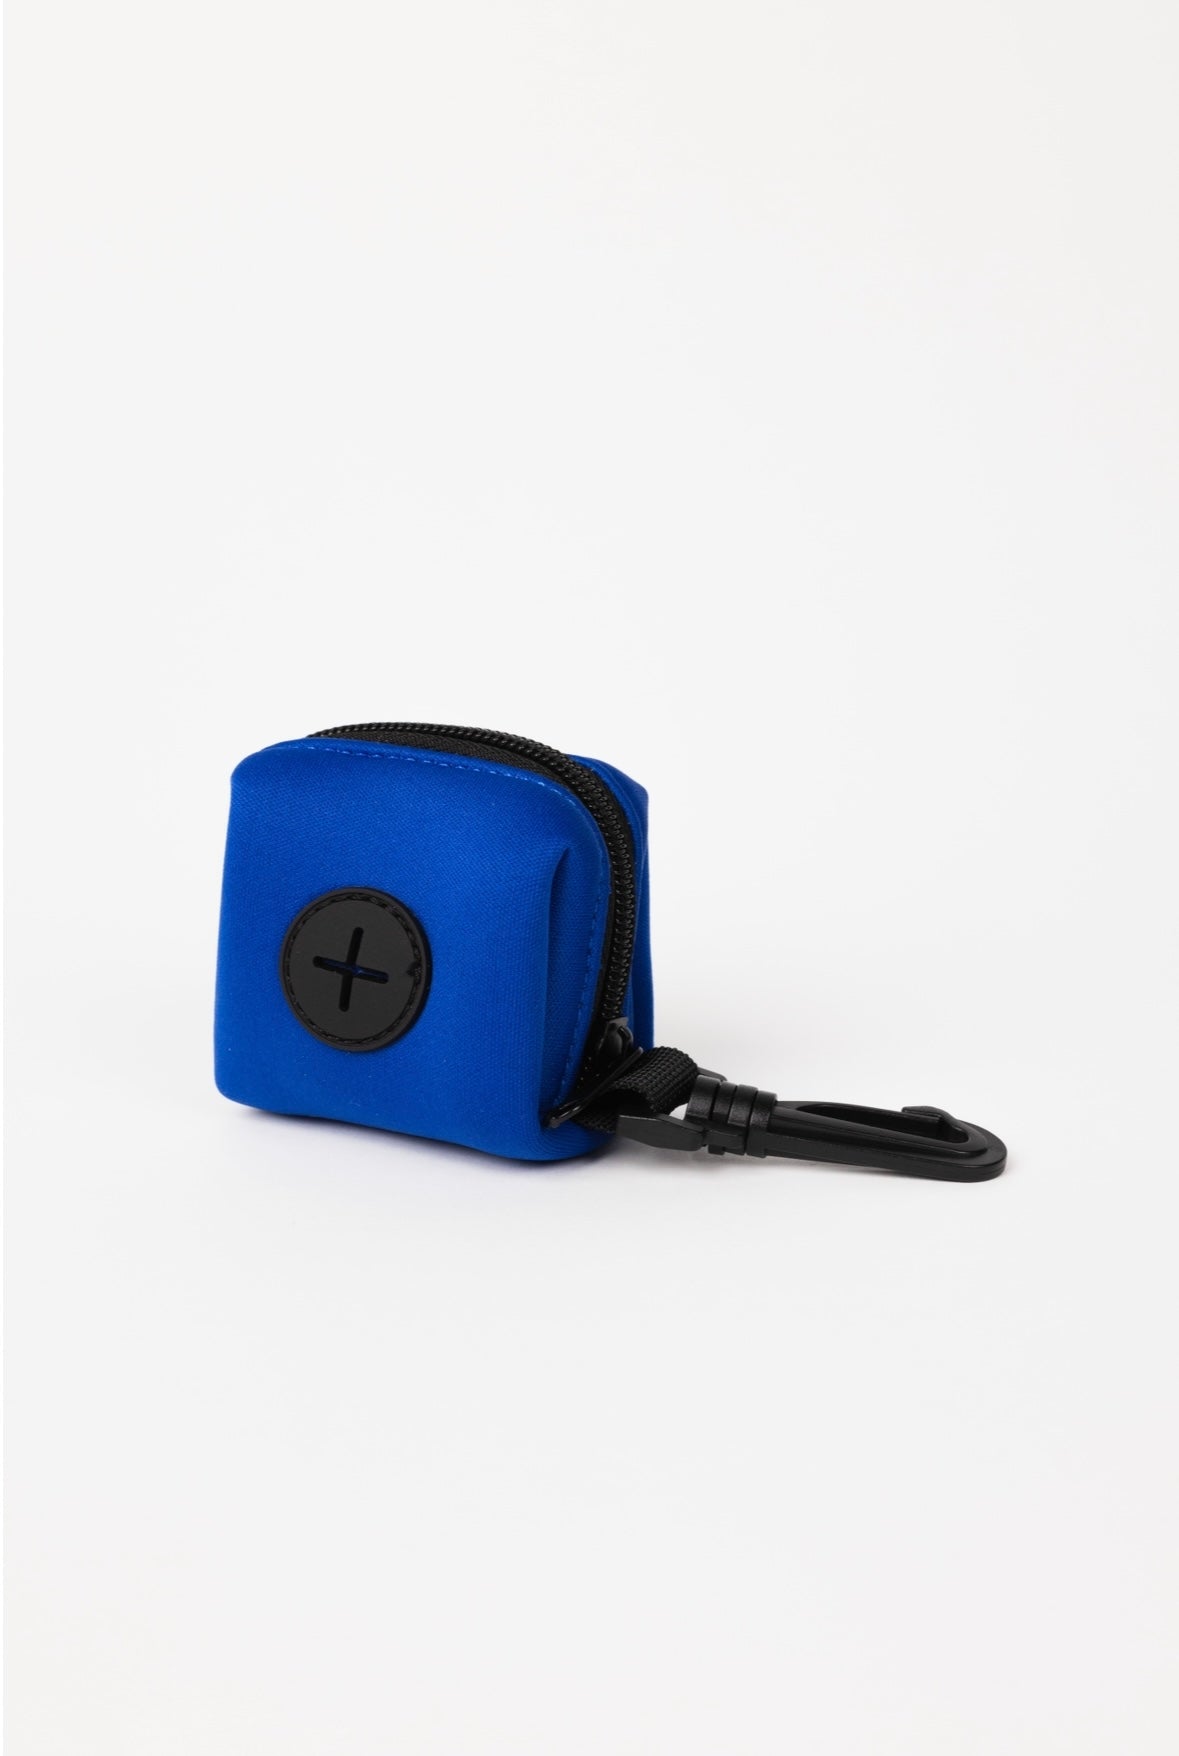 The Modern Dog Company - Royal Blue Poop Bag Holder